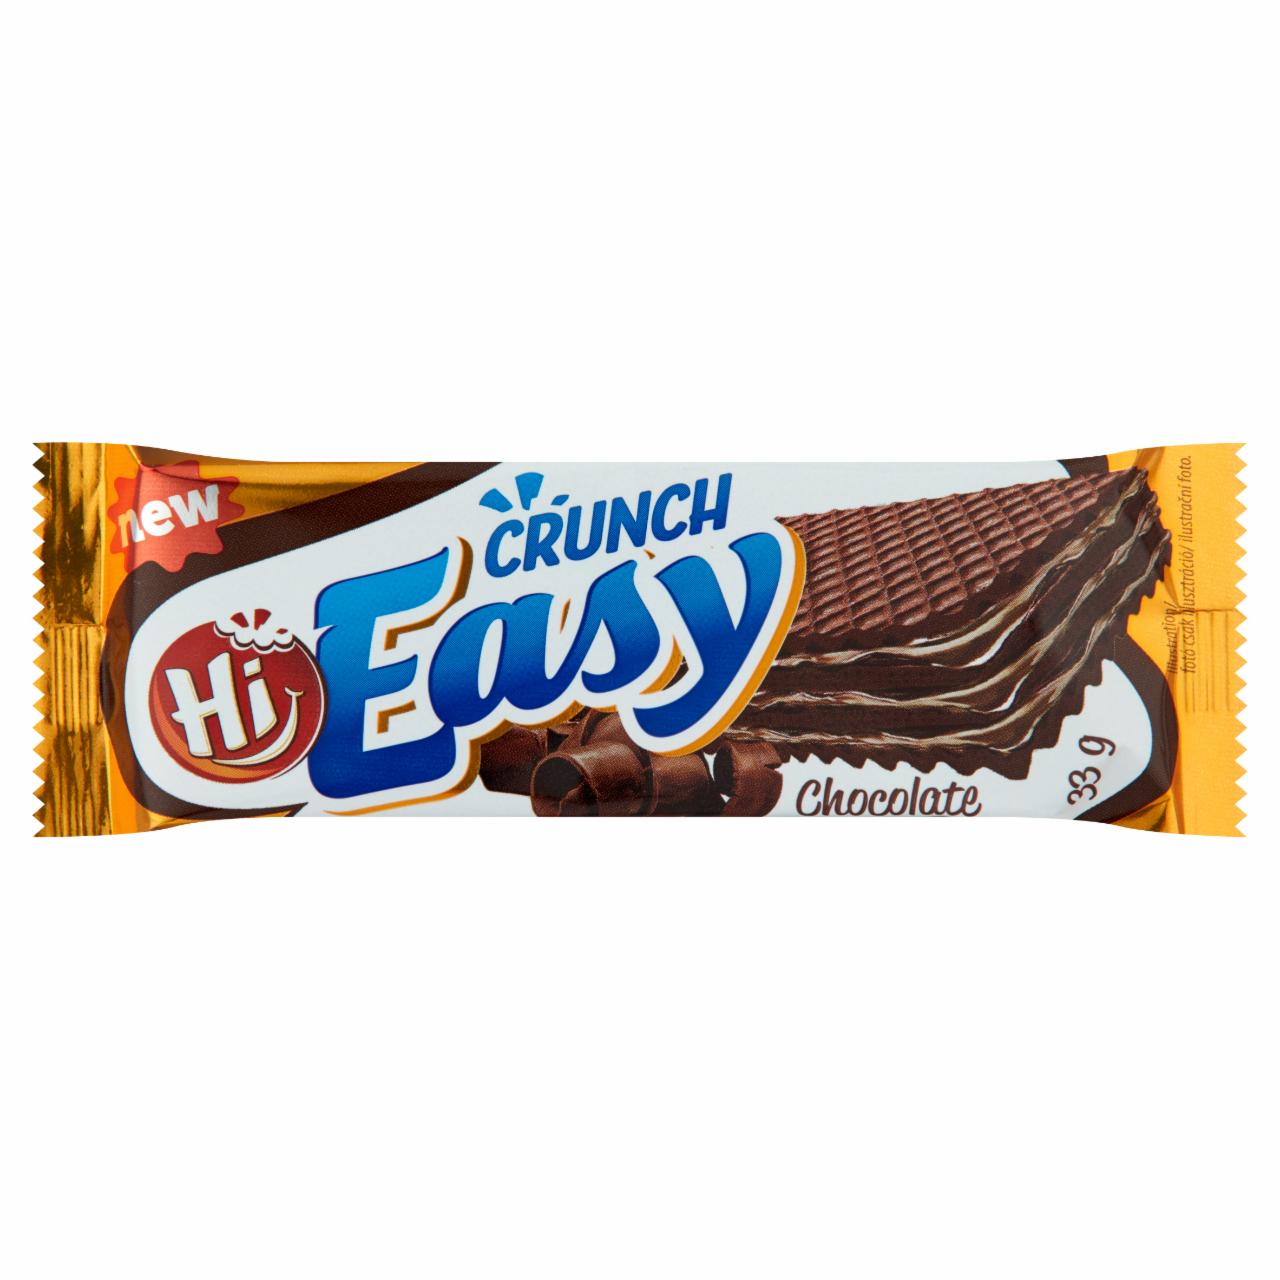 Képek - Easy Crunch csokoládé ízű krémmel töltött kakaós ostya 33 g